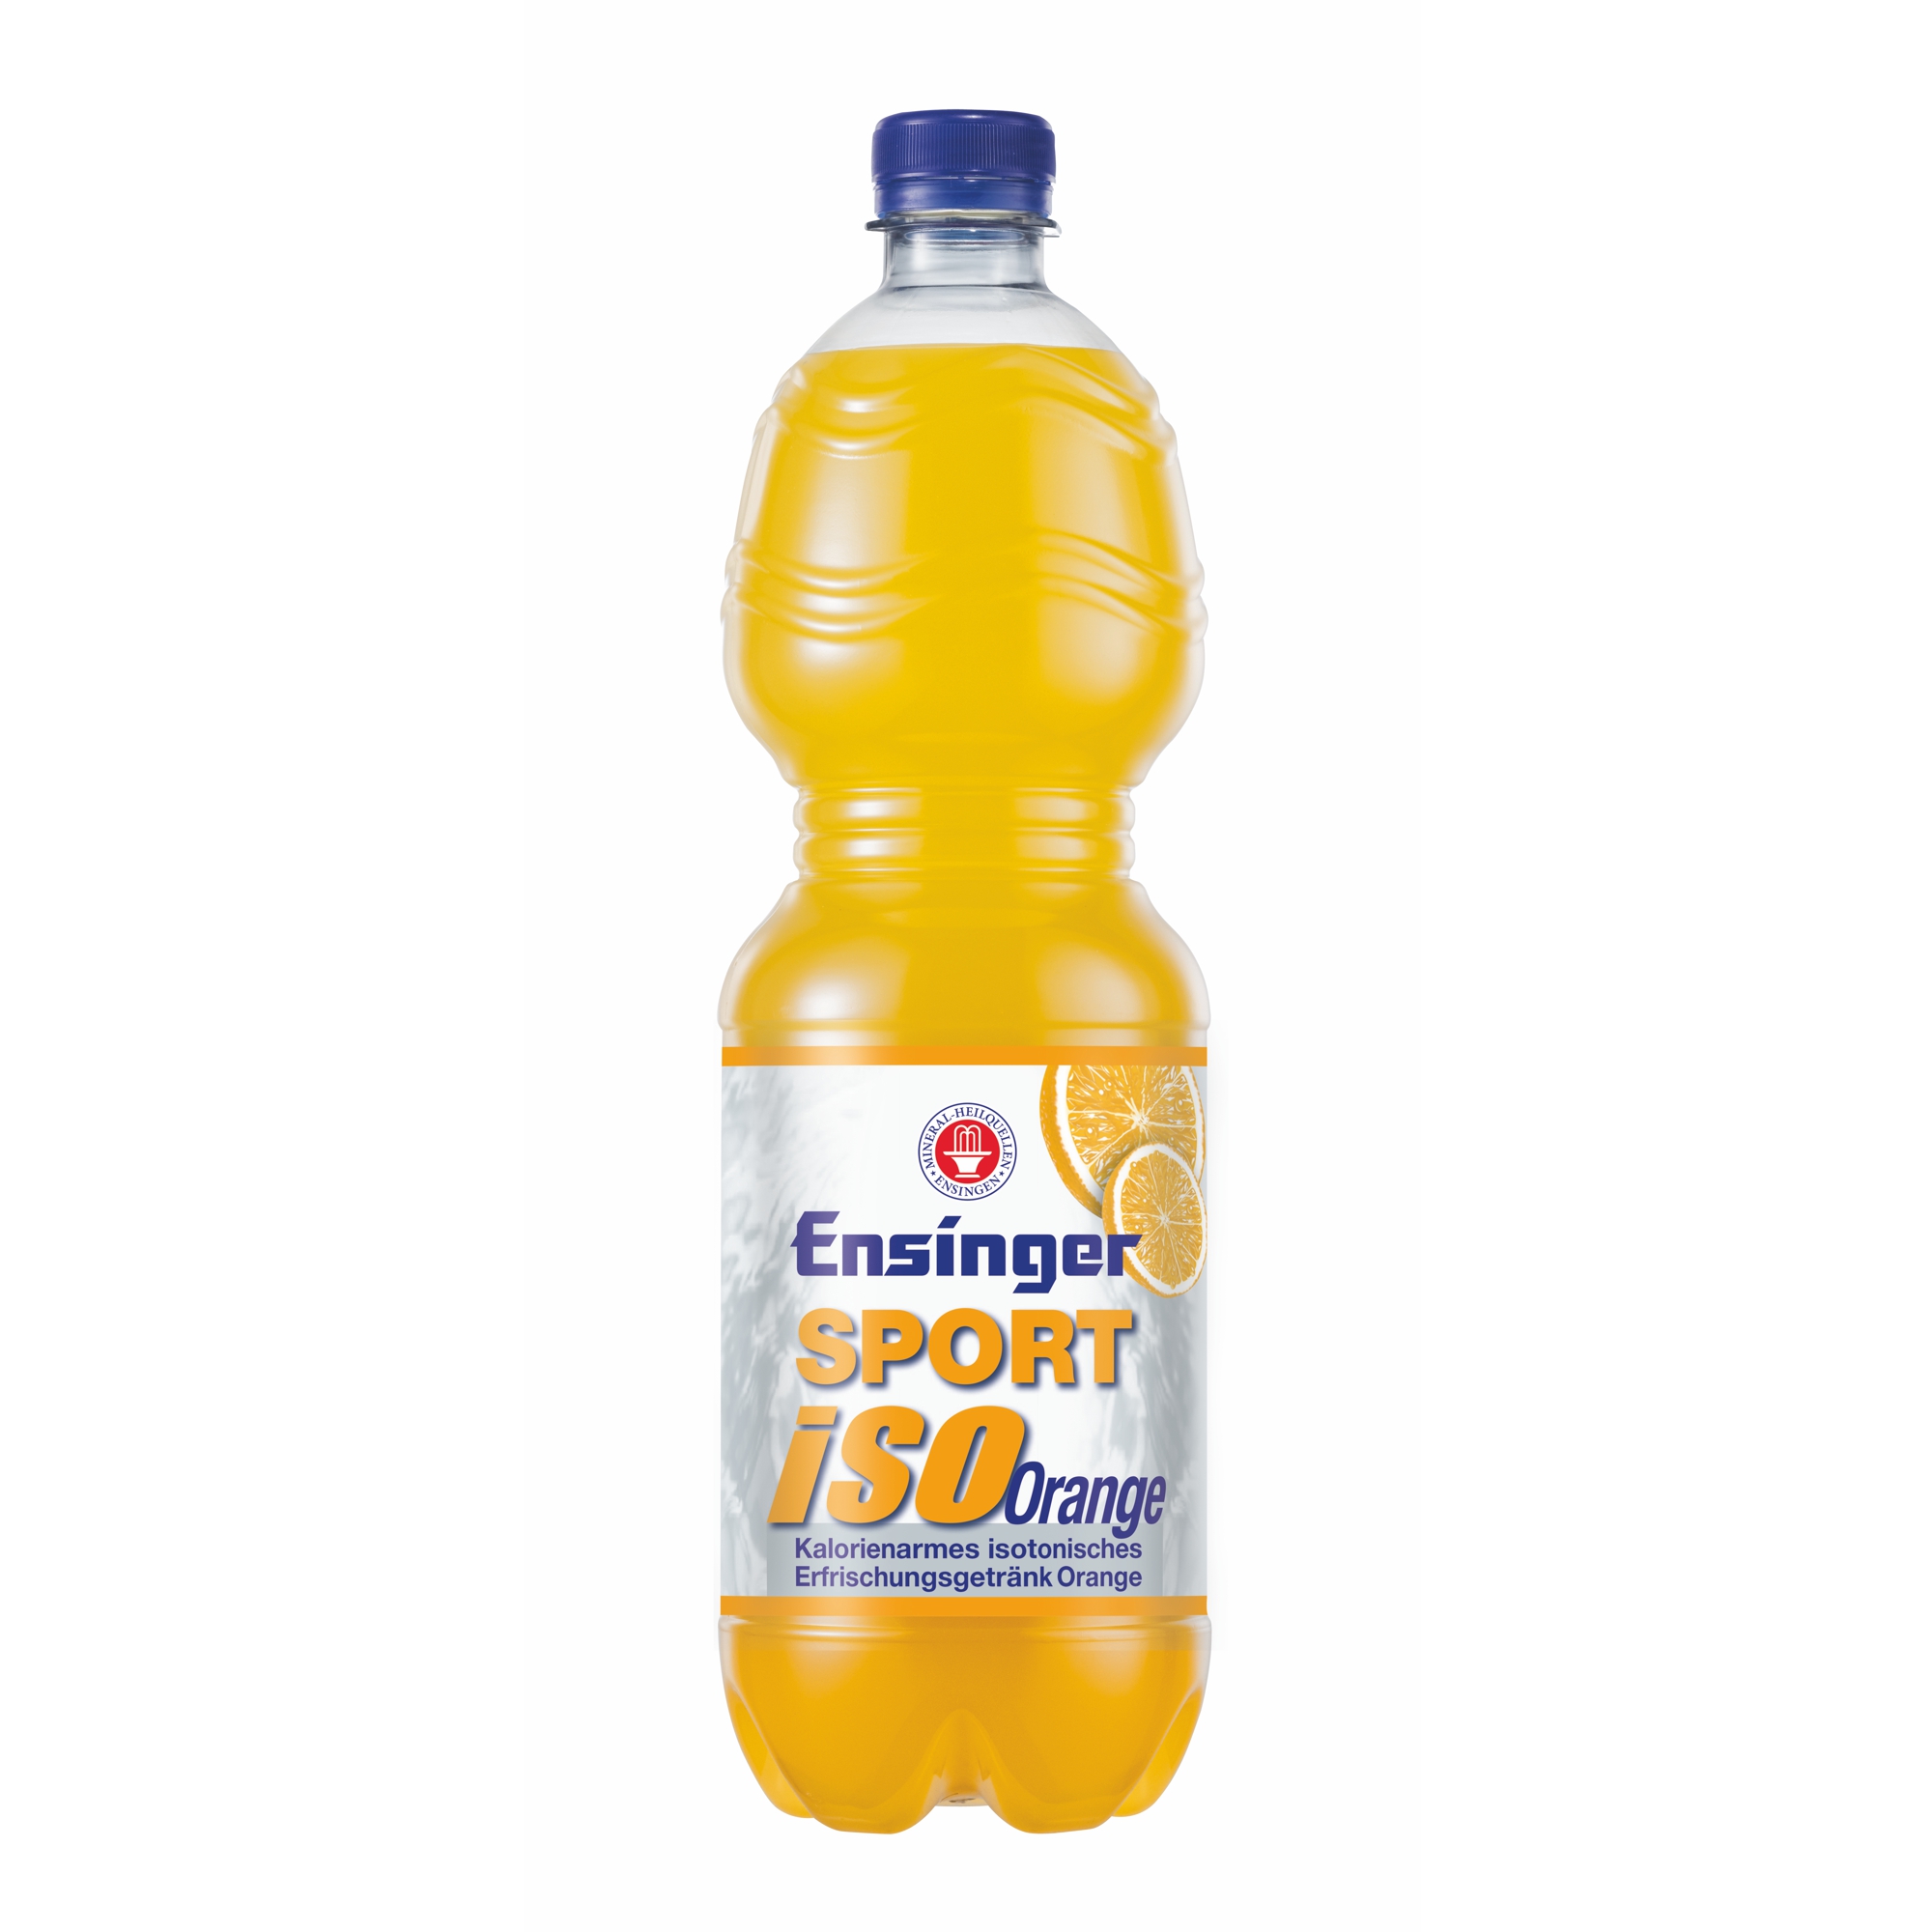 ISO online Ensinger SPORT Orange kaufen